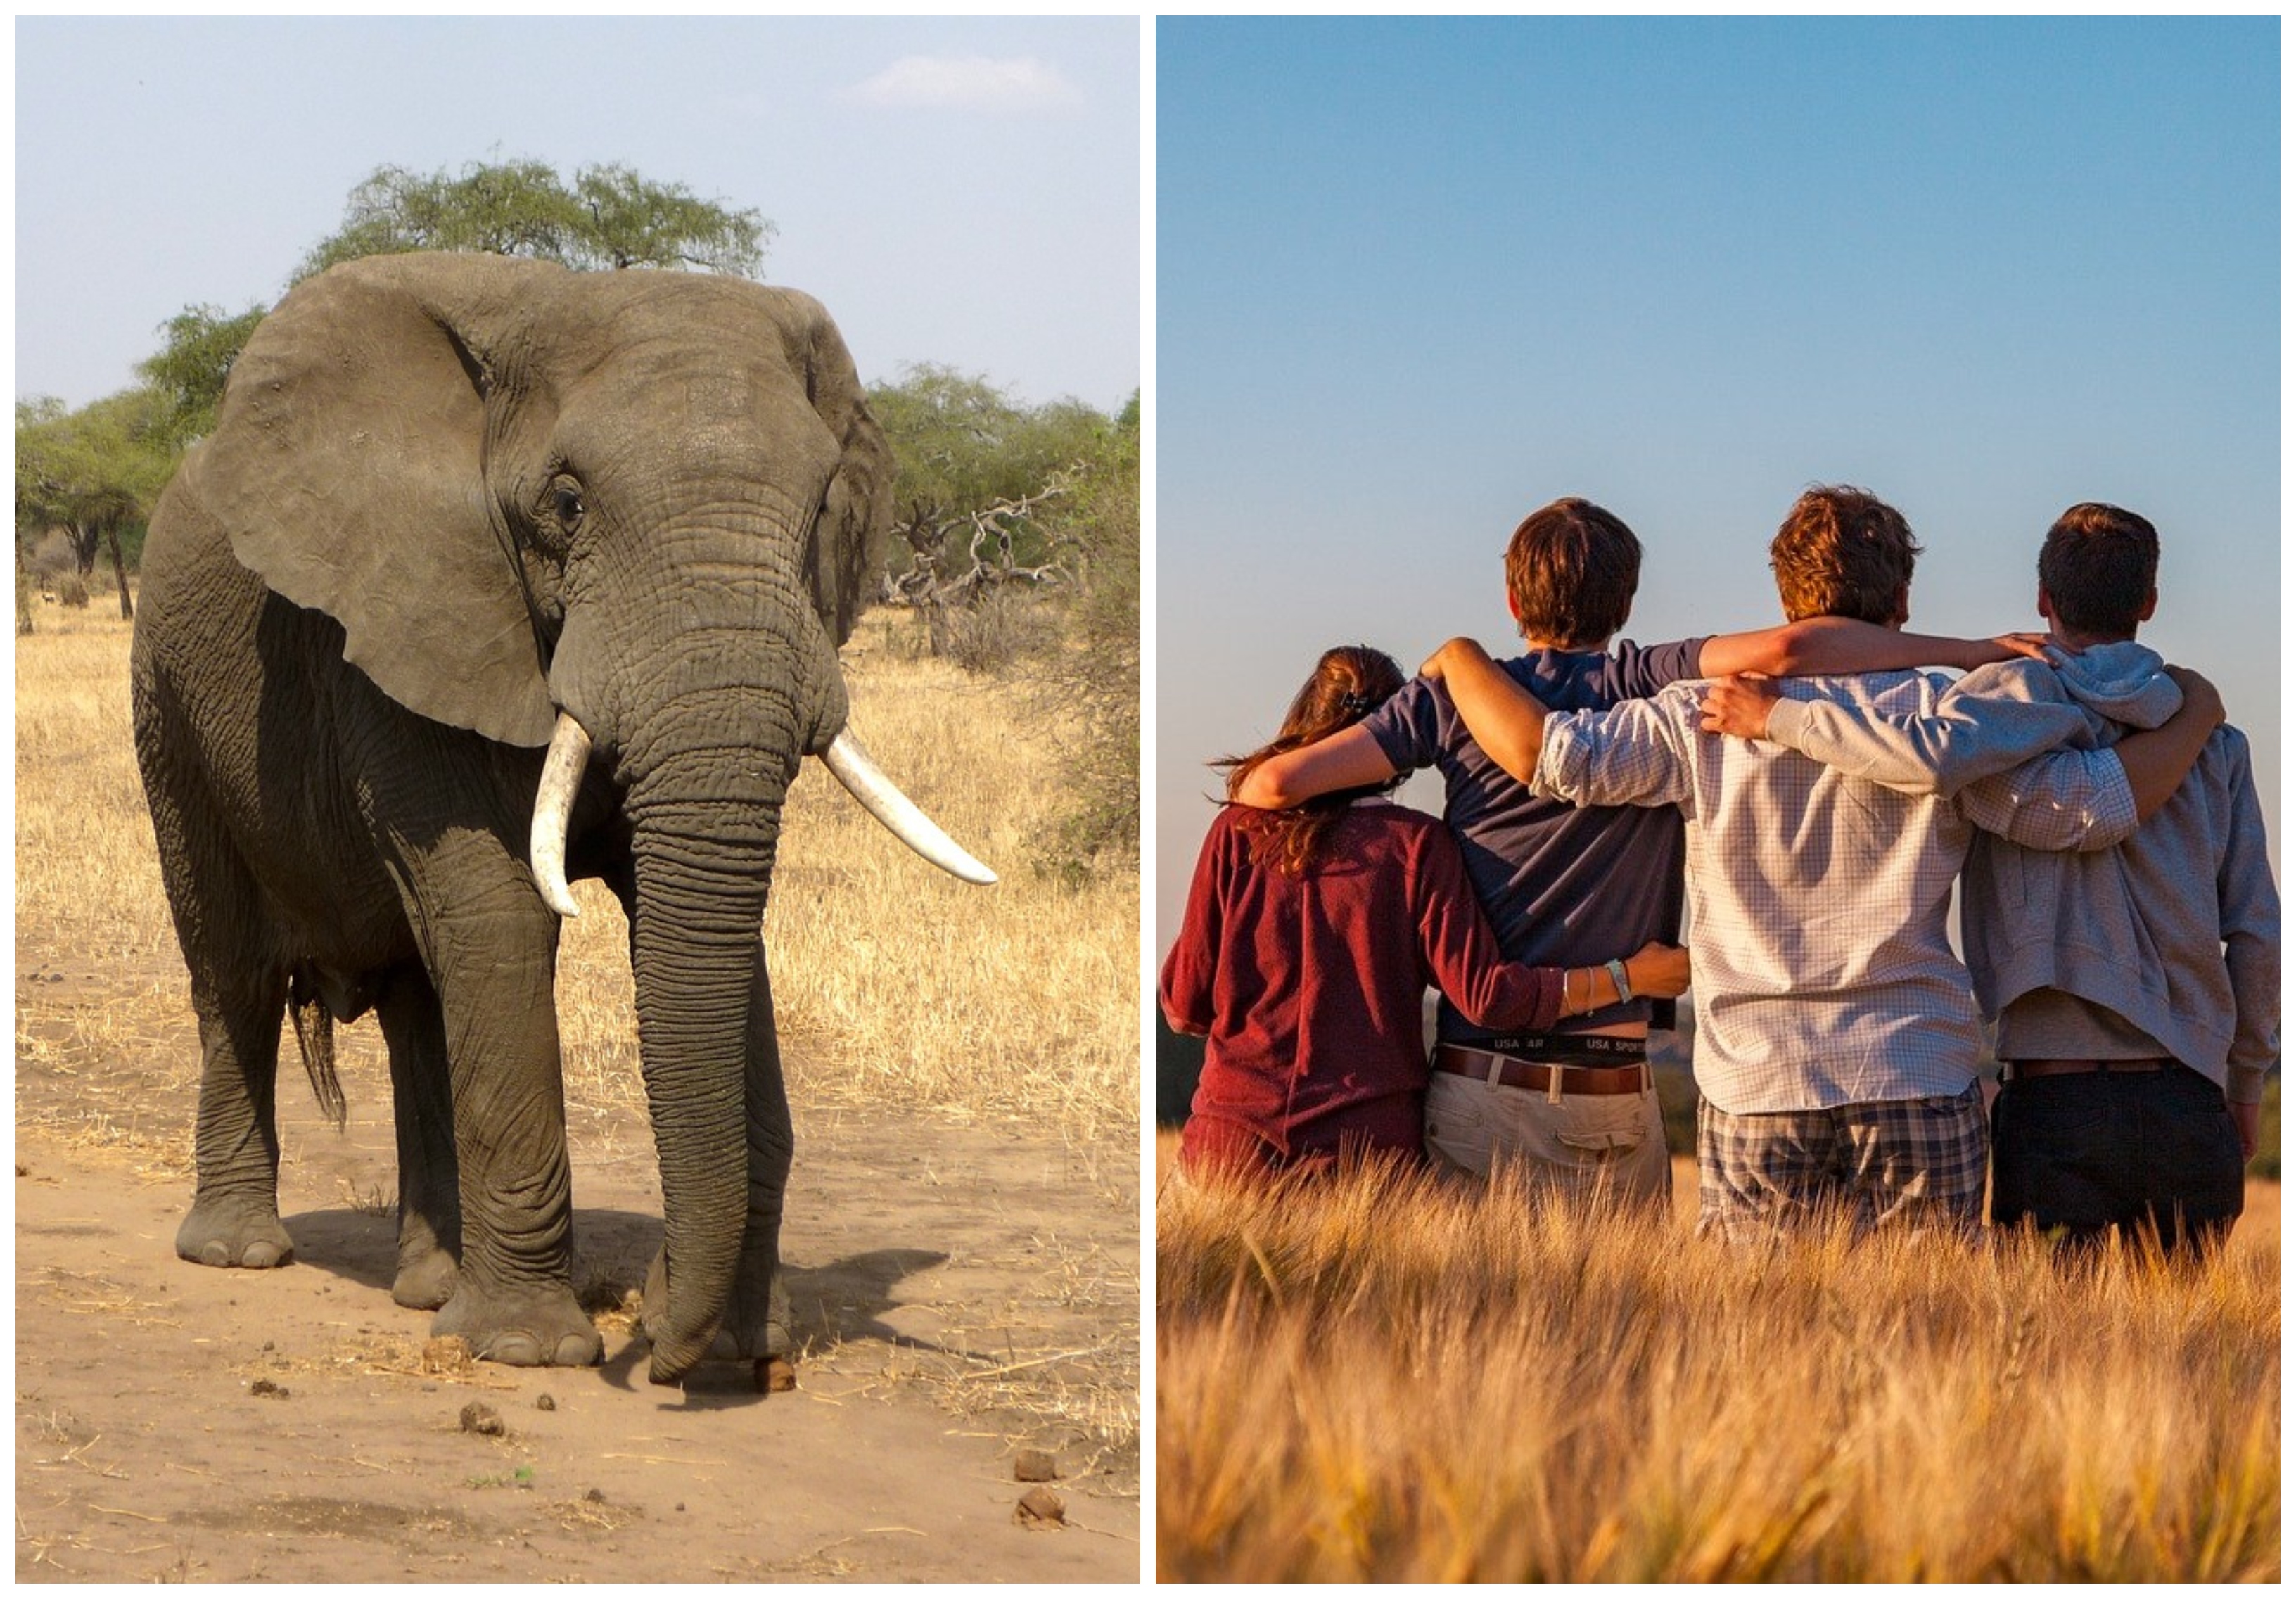 12 august, ziua mondială a elefantului și ziua internațională a tineretului. FOTO: Pixabay